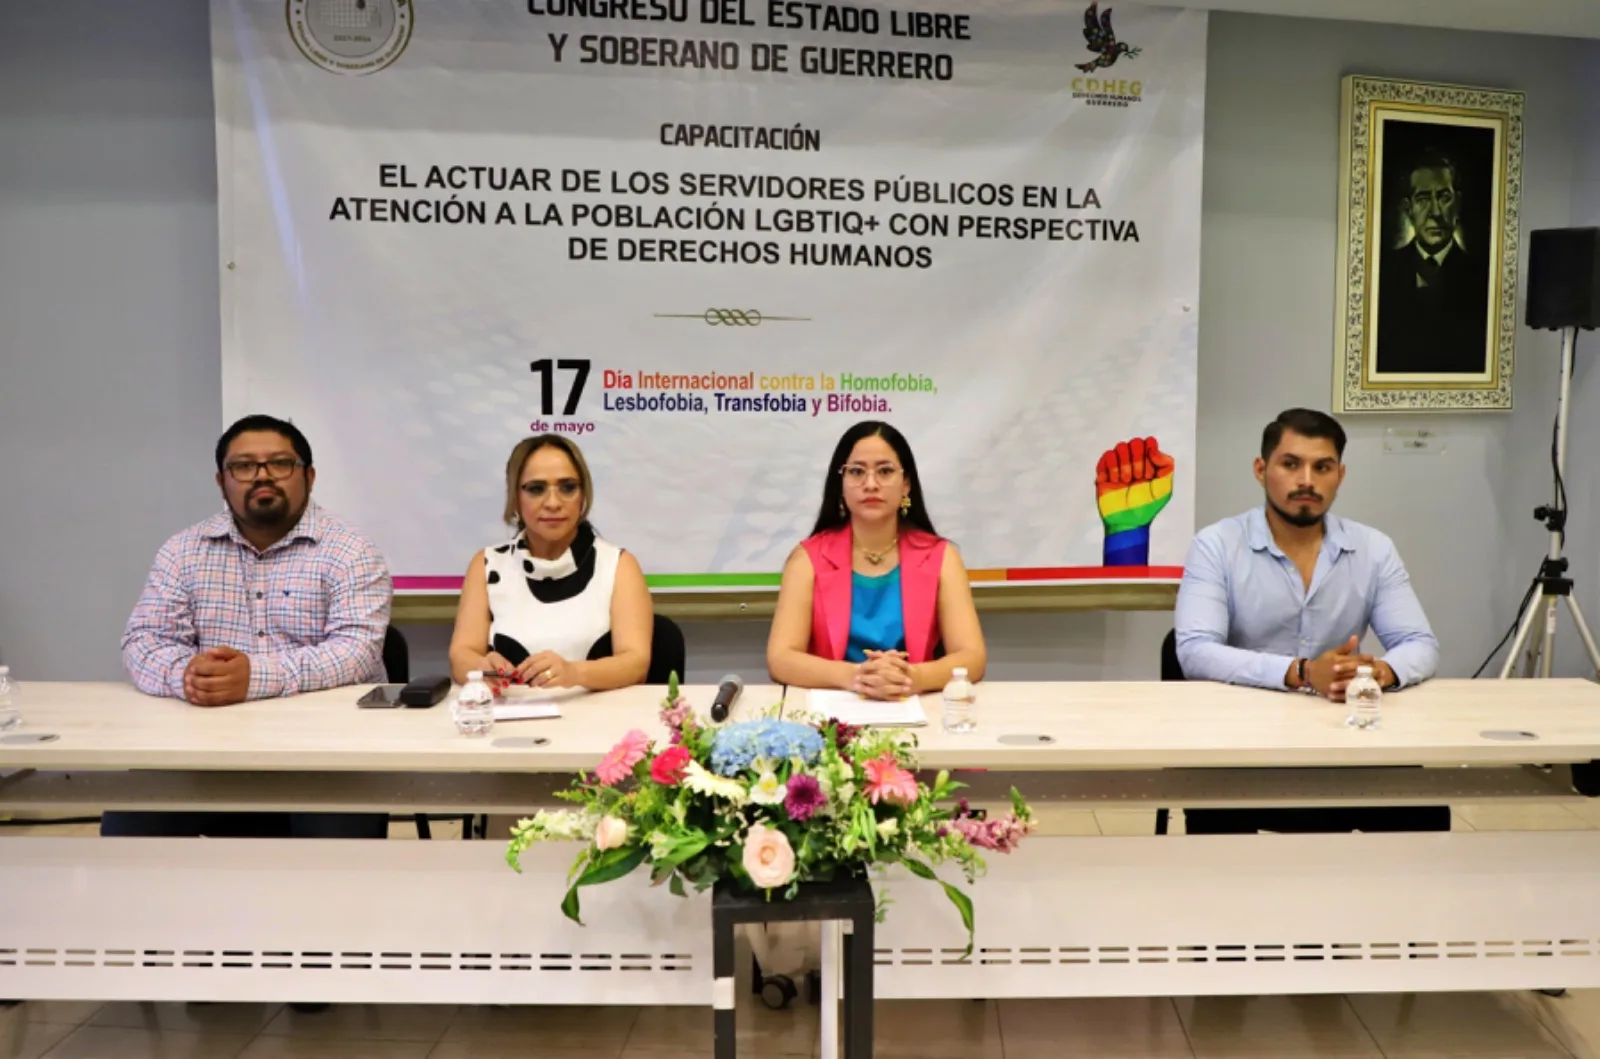 Desarrolla el congreso un curso en materia de derechos humanos de la poblacion LGBTIQ+